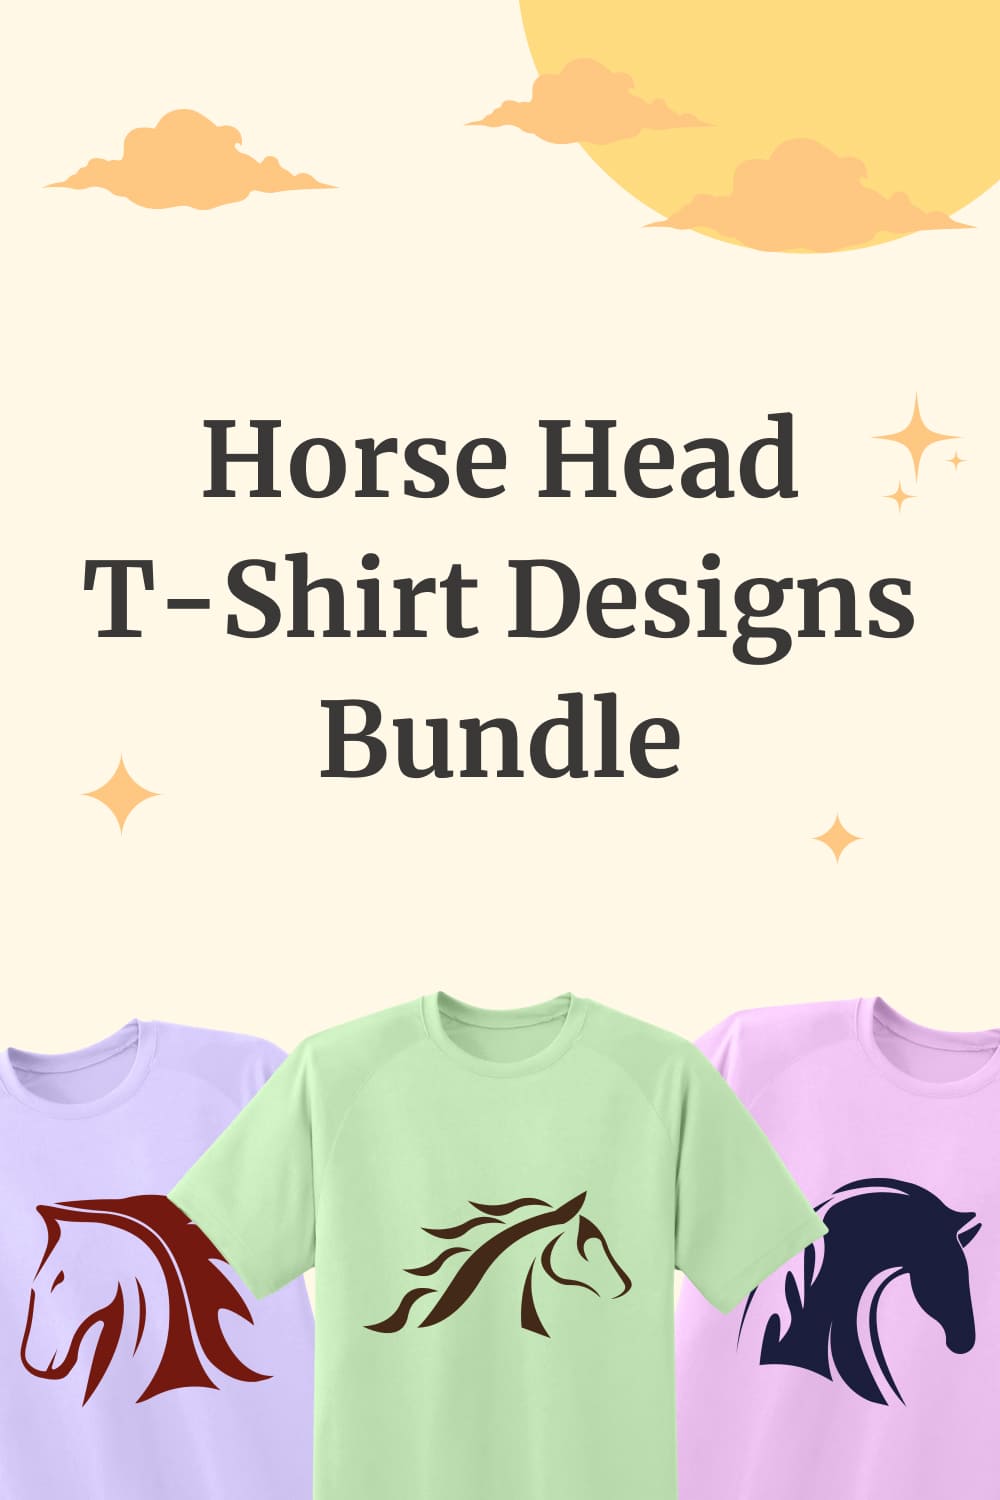 Horse Head Svg T-shirt Designs - Pinterest.